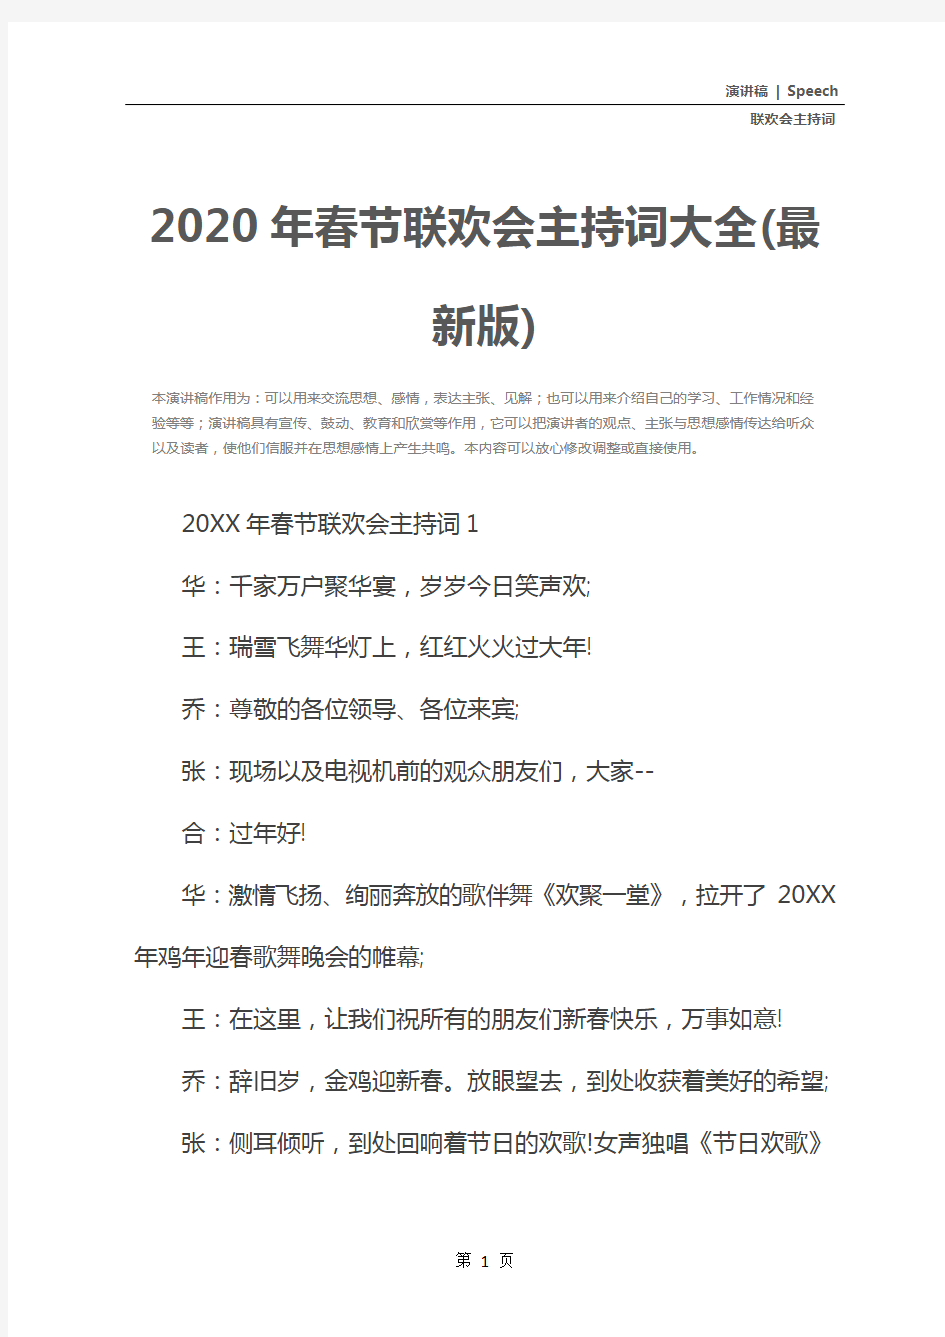 2020年春节联欢会主持词大全(最新版)